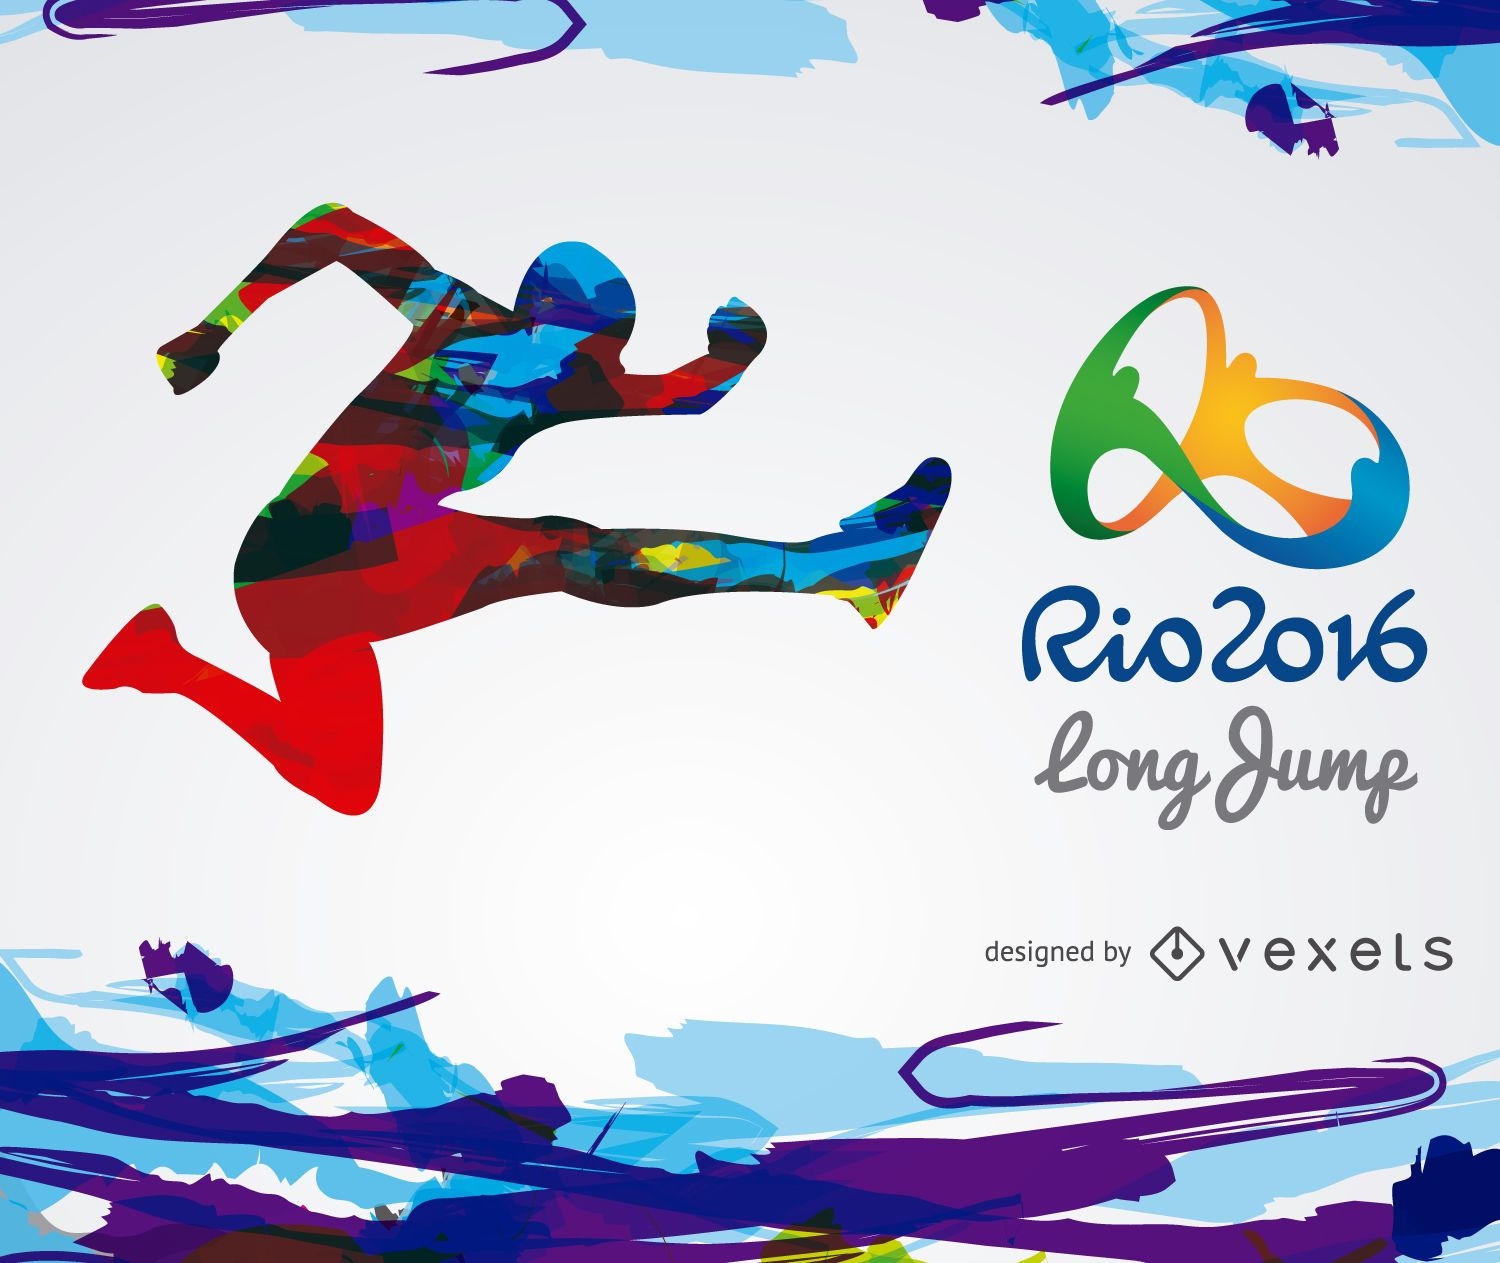 Rio 2016 long jump banner